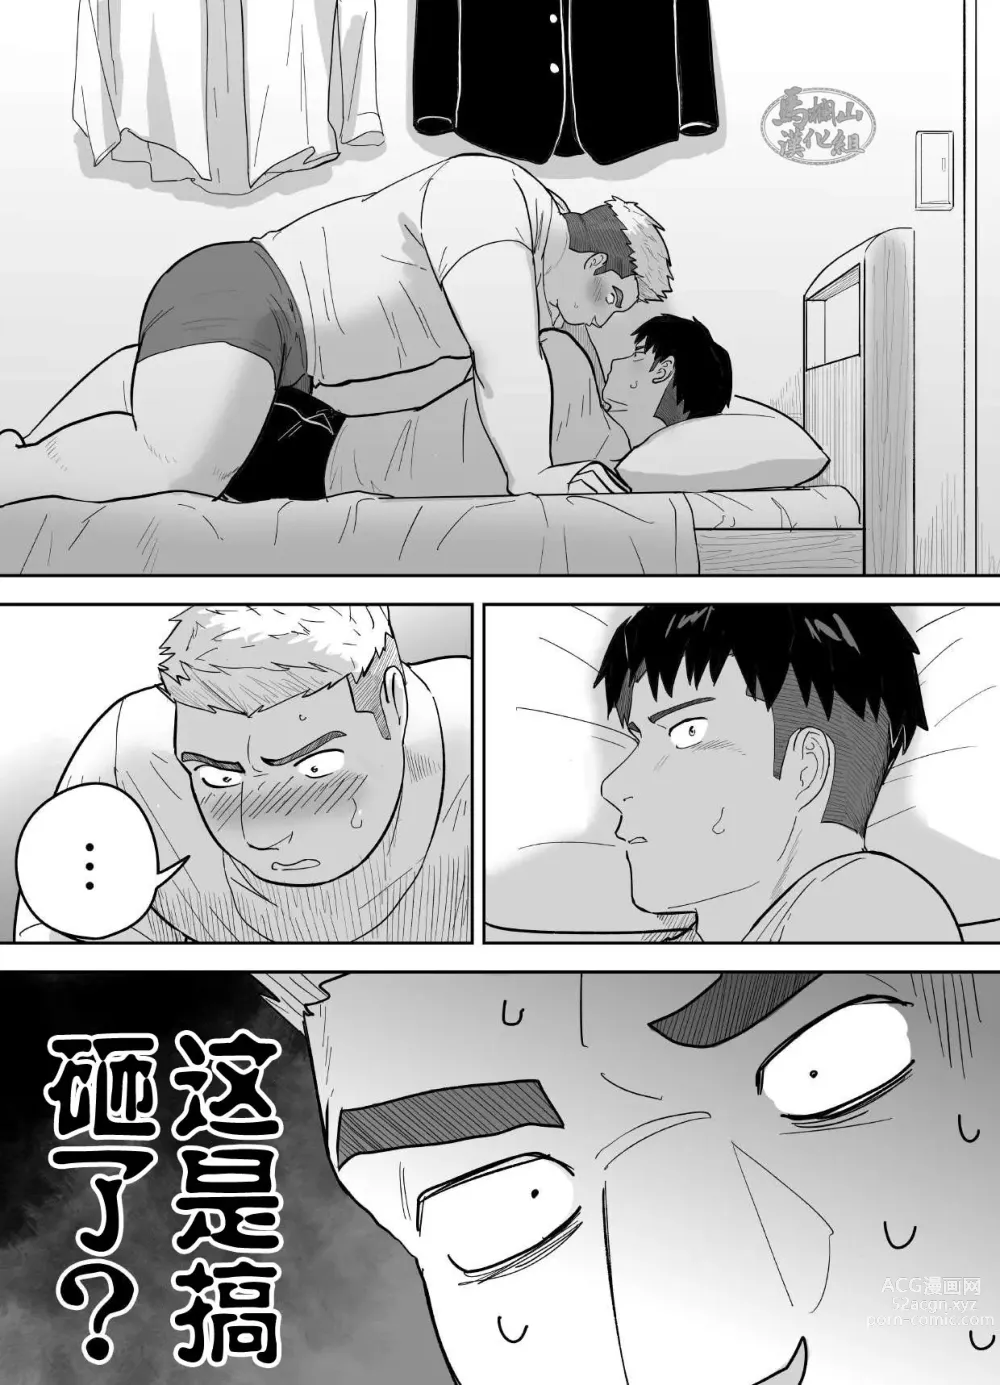 Page 9 of manga 片思いしてるガチムチ同級生に襲われる話